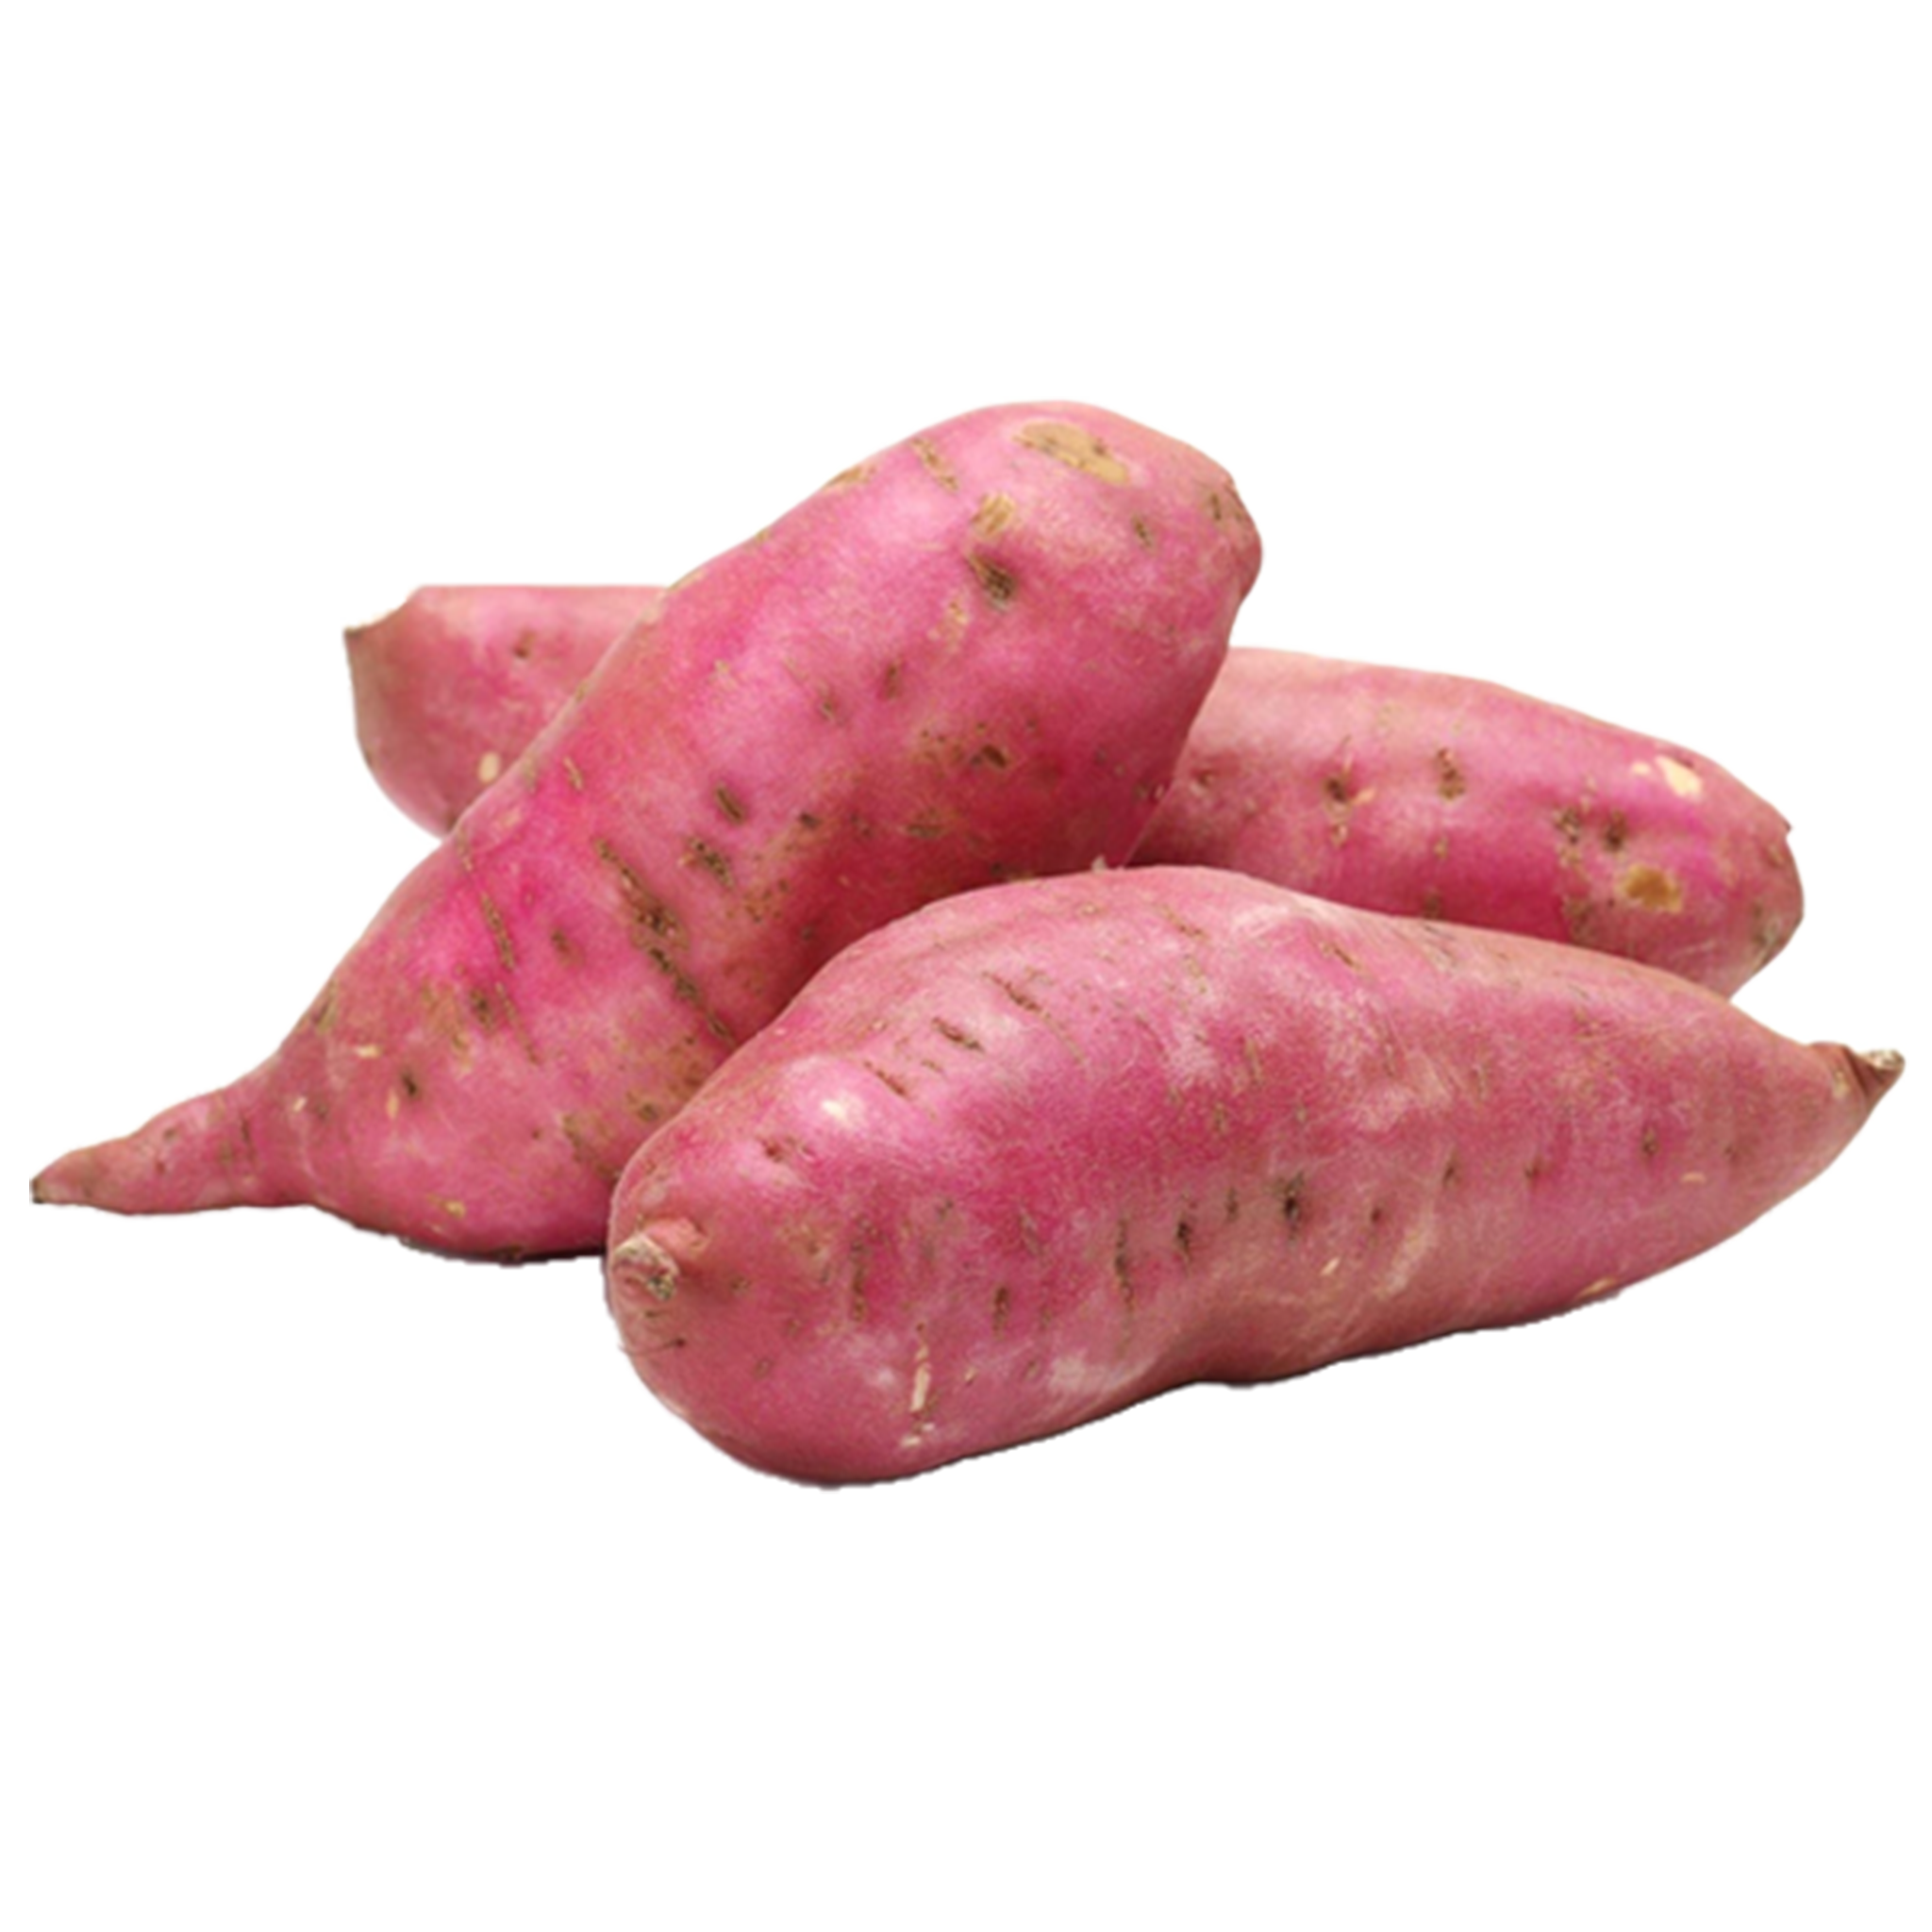 Bataati Macaan (sweet potatoes) 1Kg